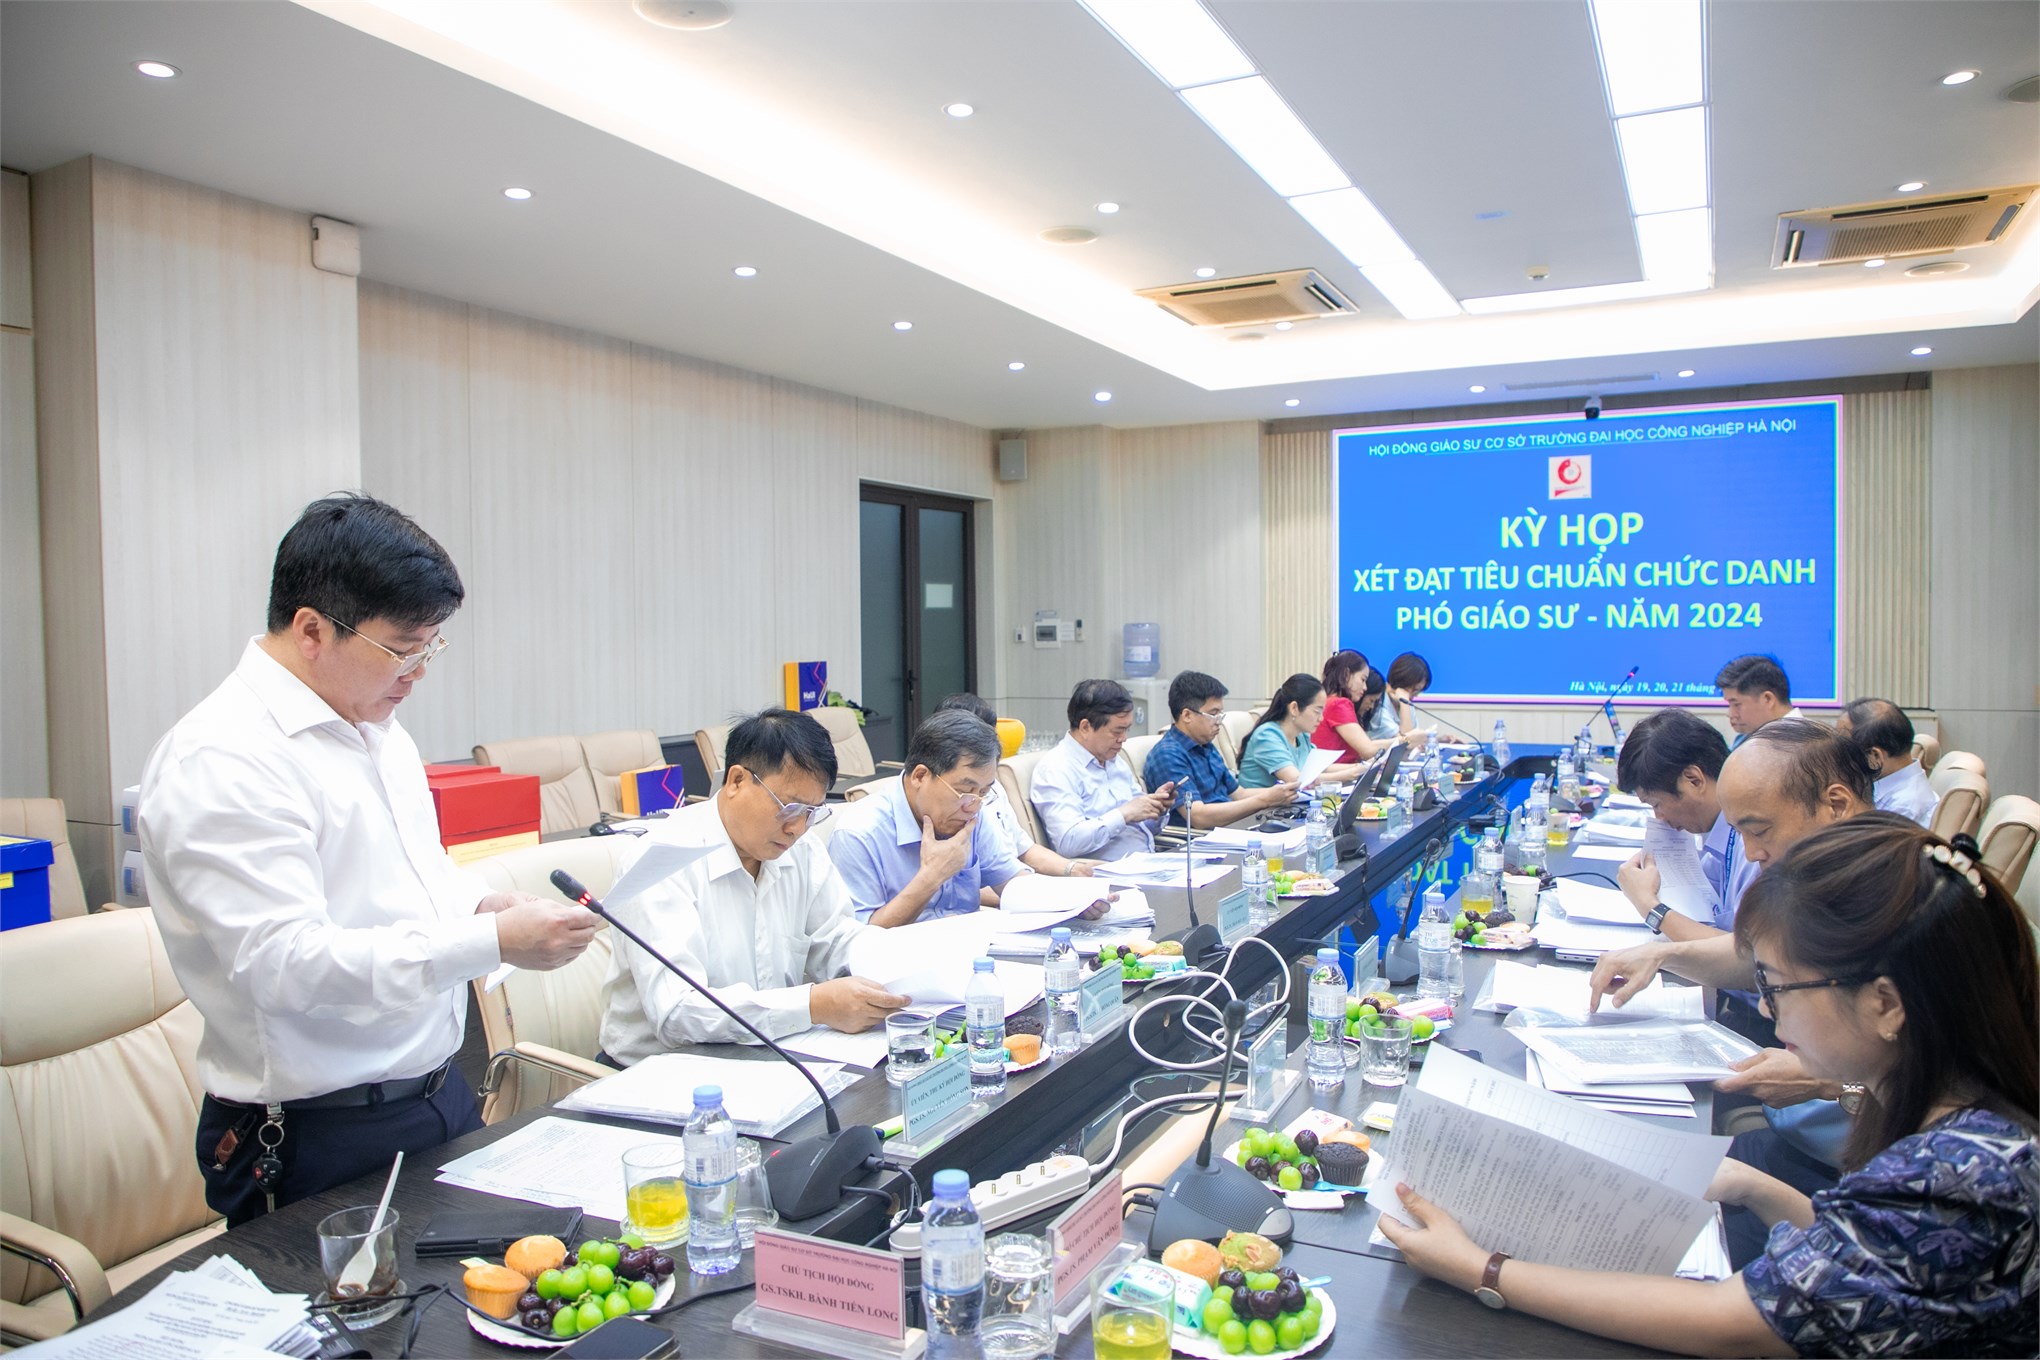 Hội đồng Giáo sư cơ sở Trường Đại học Công nghiệp Hà Nội 10 ứng viên đạt kết quả xét chọn tiêu chuẩn chức danh Phó giáo sư năm 2024